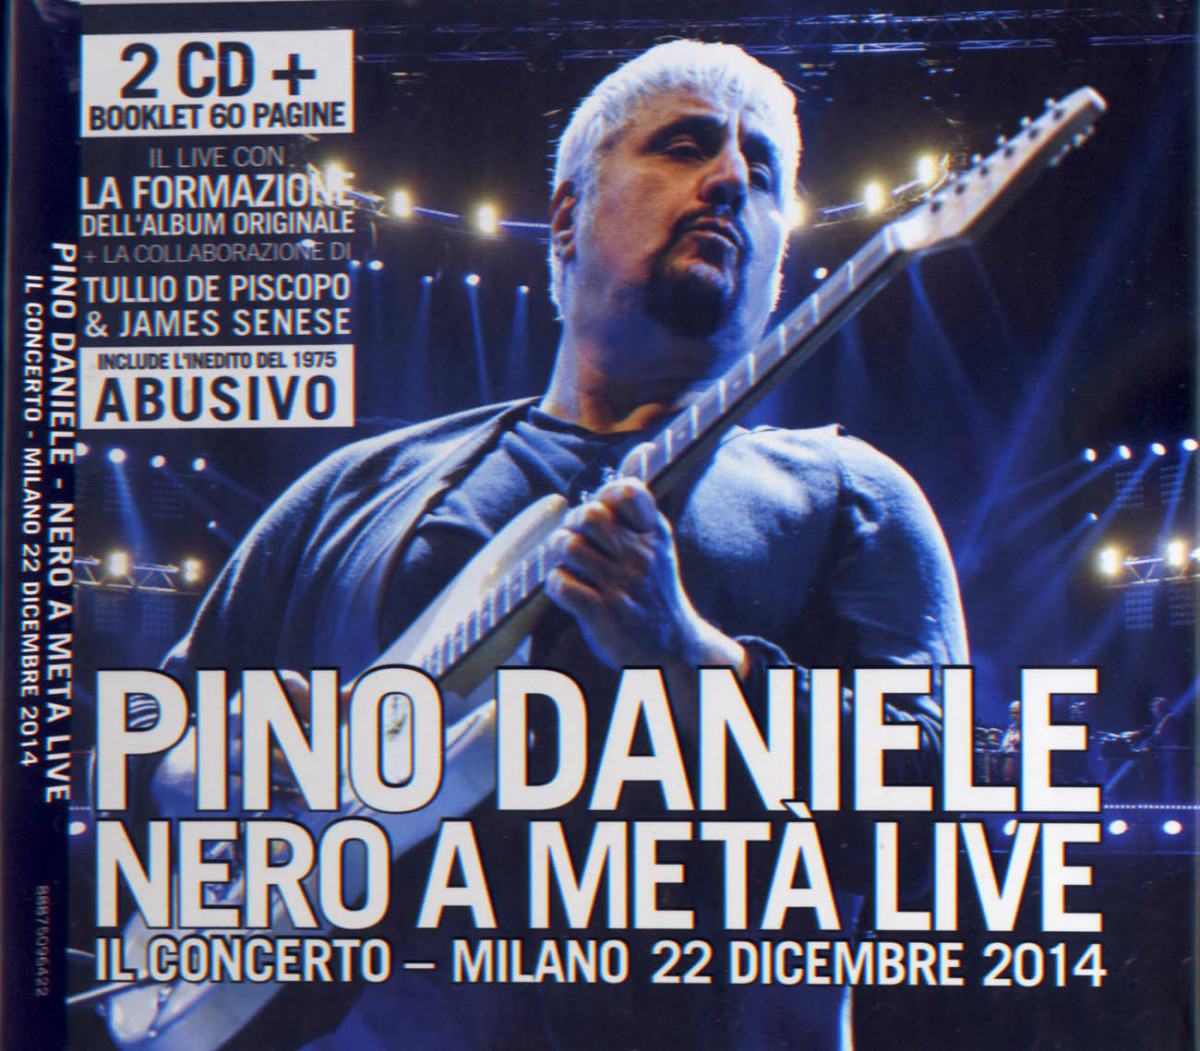 cd Pino Daniele - Nero a Metà live giugno 2015 roberto panucci